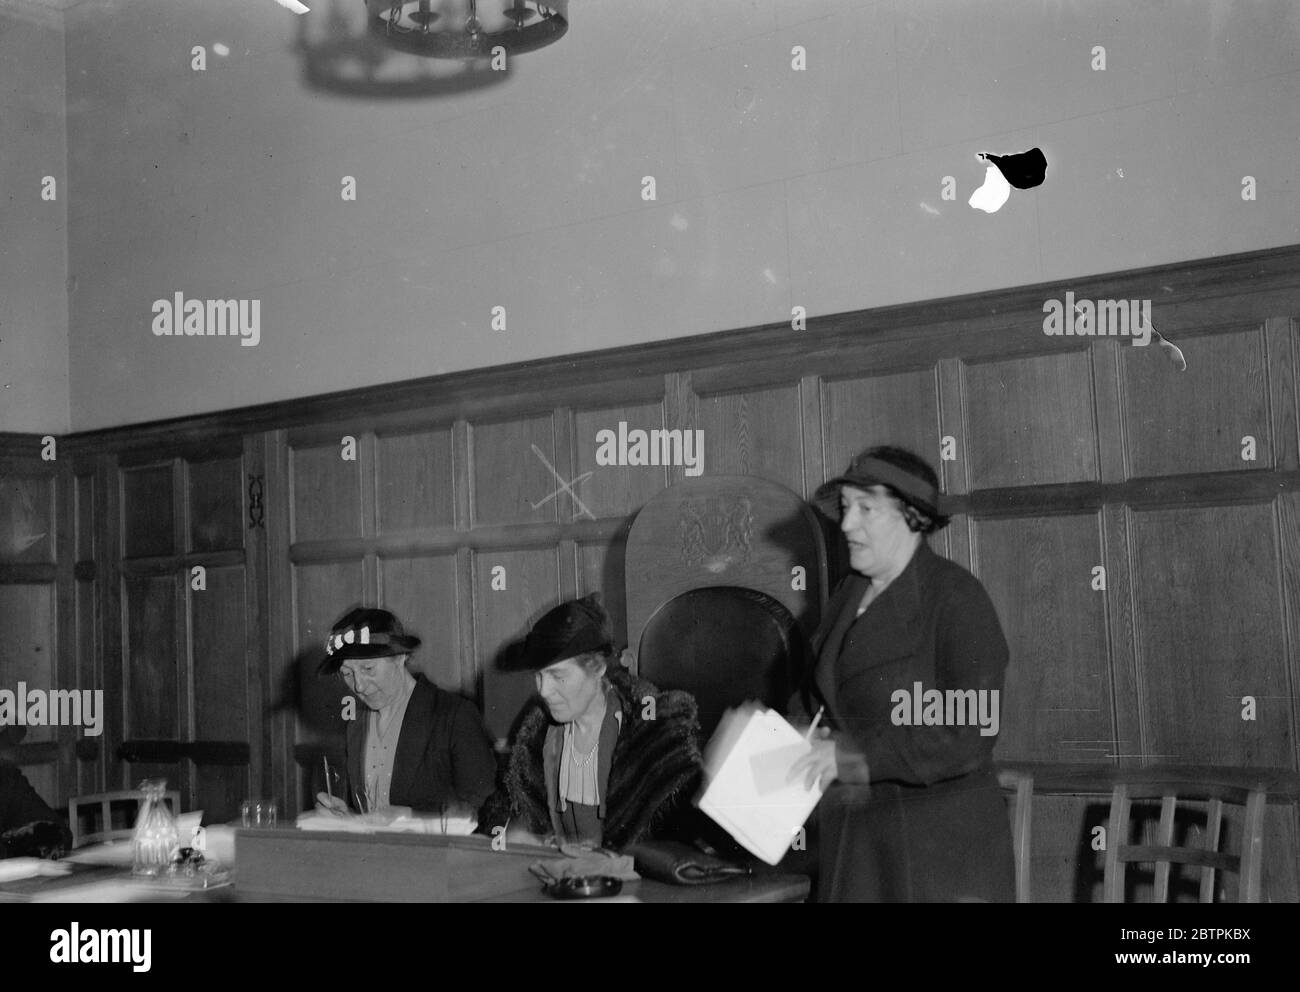 Demandes électorales de voix de femmes . Mlle Barry de la Société sociale et politique de St Joan , s'adressant à la conférence . Mlle F A Underwood , la secrétaire de la Ligue pour la liberté des femmes est à gauche , avec Mme Corbett Ashby ( au centre ) . 25 octobre 1935 Banque D'Images